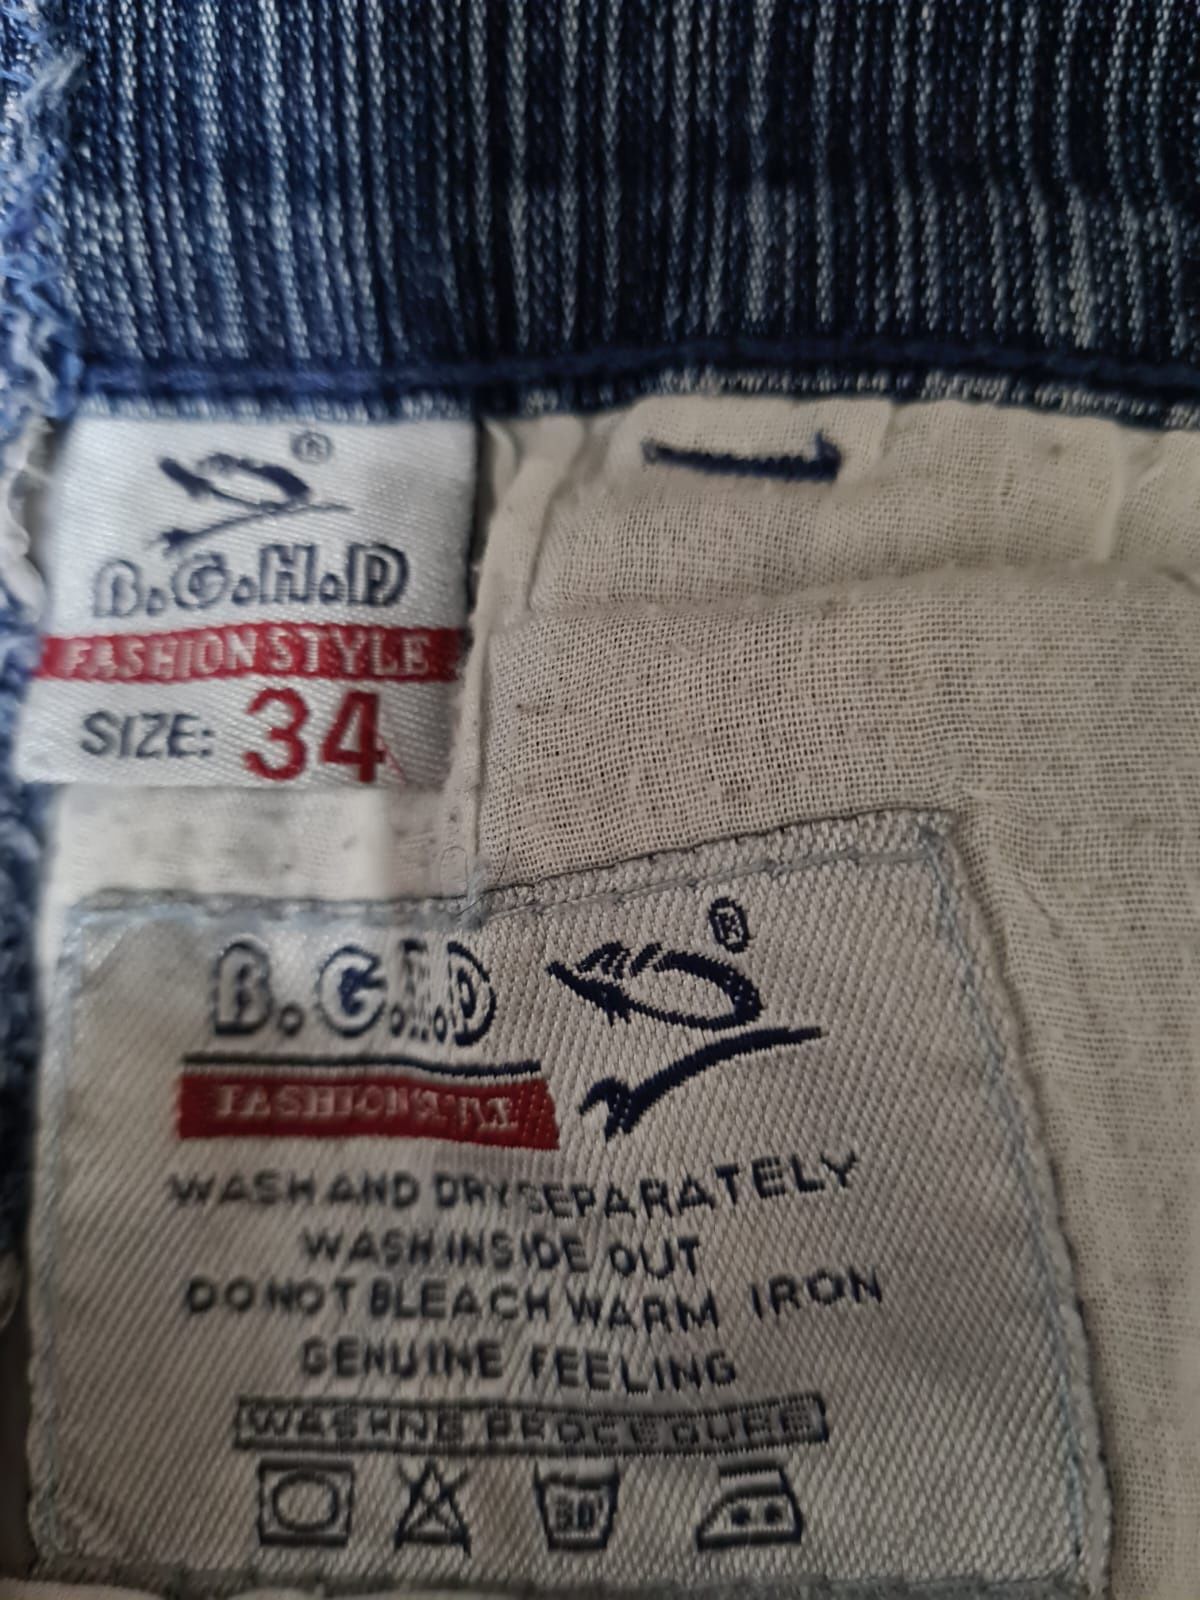 Мужской джинсовый костюм б/у, размер 50, материал стрейч